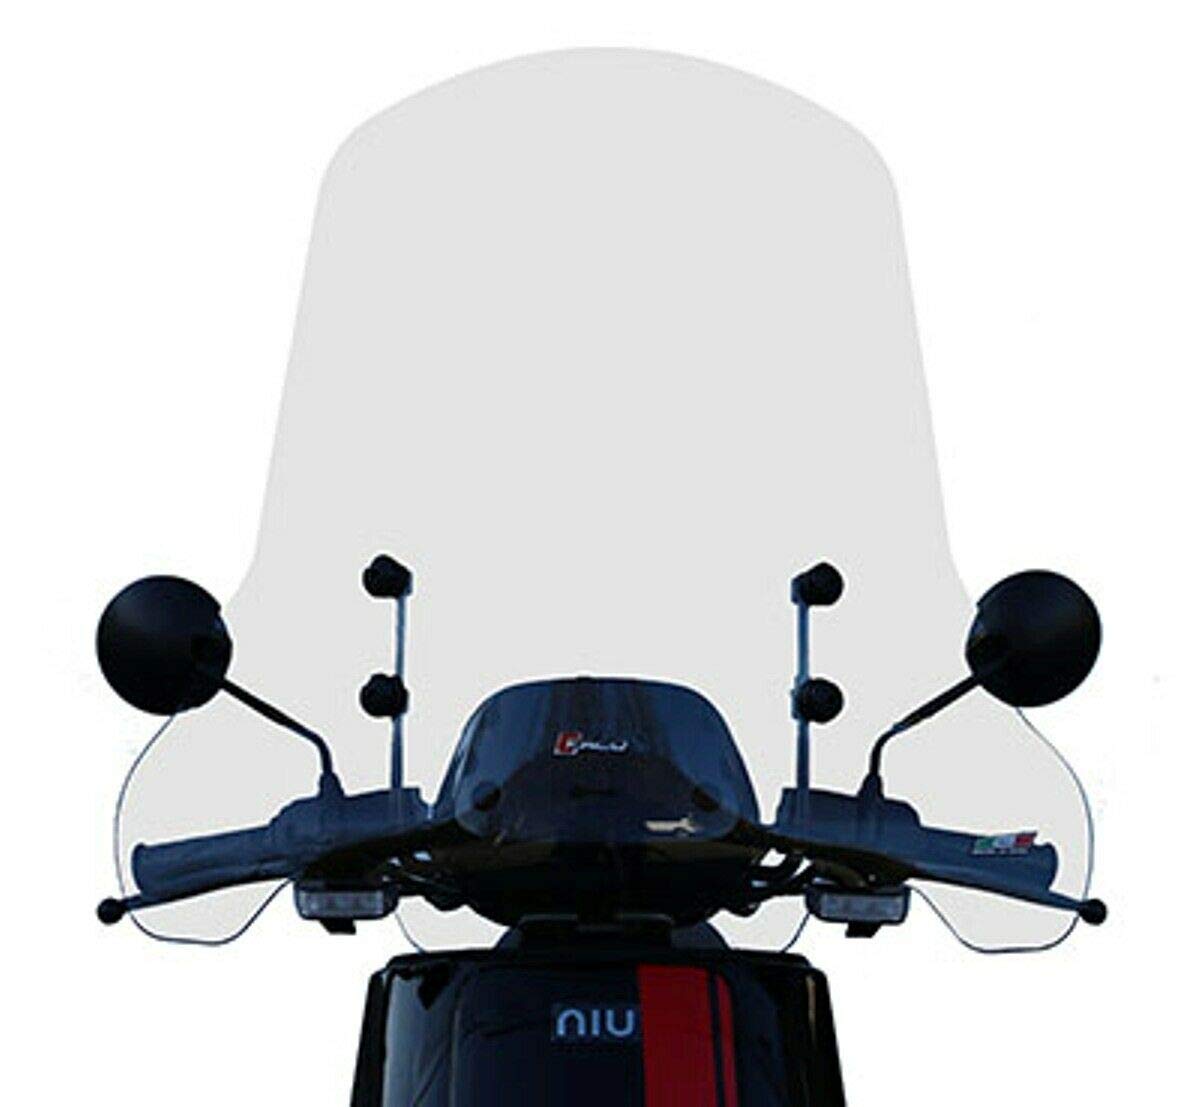 Windschutzscheibe NIU N15-NGT – Art. 23596 für alle Modelle mit bloßem Lenker Befestigung der Windschutzscheibe an den nackten Lenker